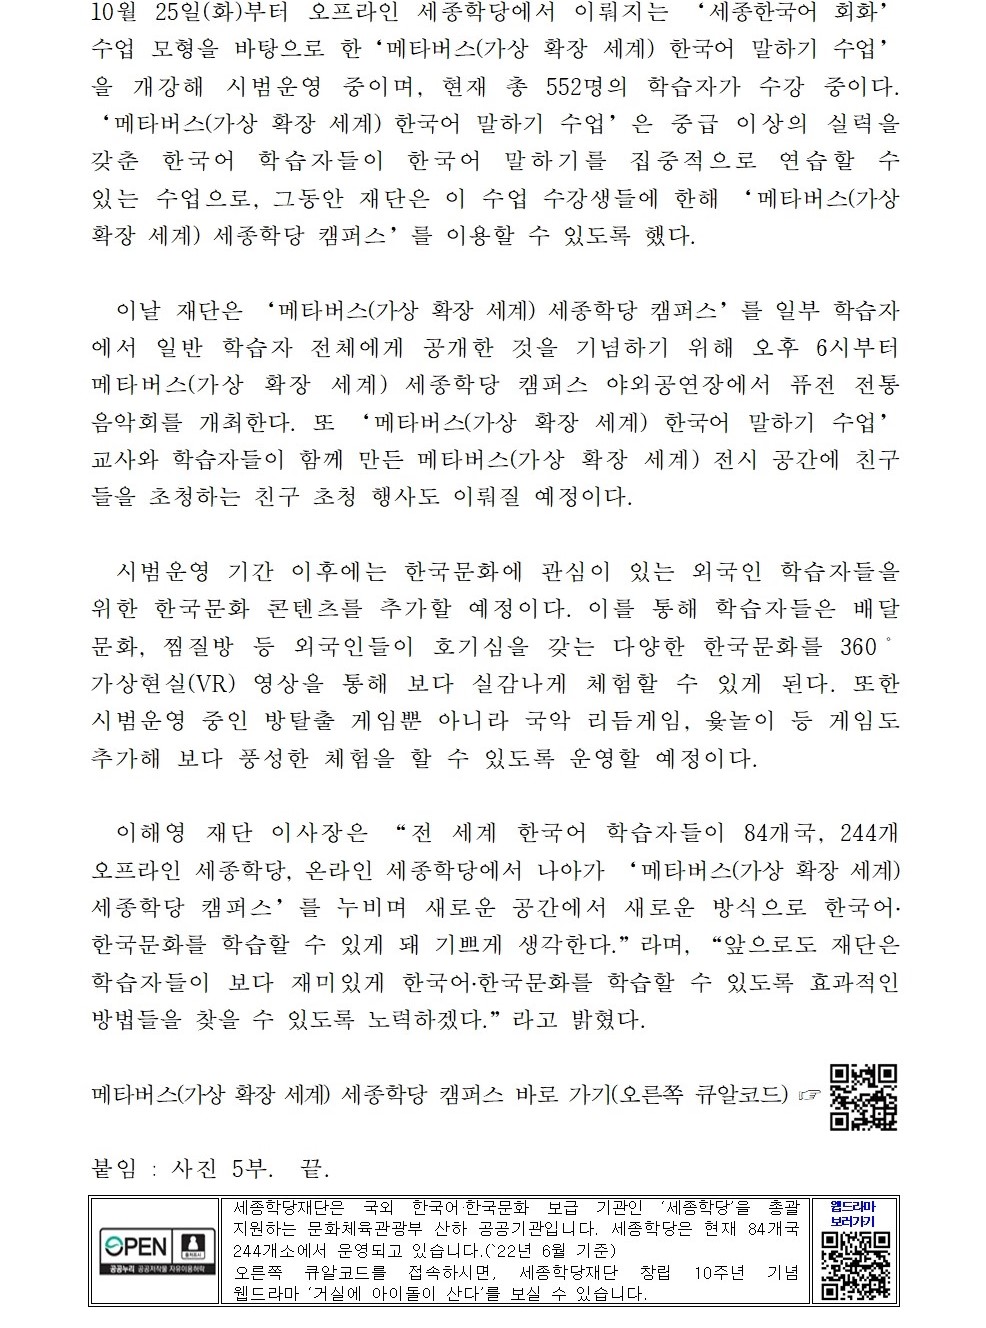 메타버스 세종학당 캠퍼스 누비며 재미있게 한국어 공부해요!(보도자료)002